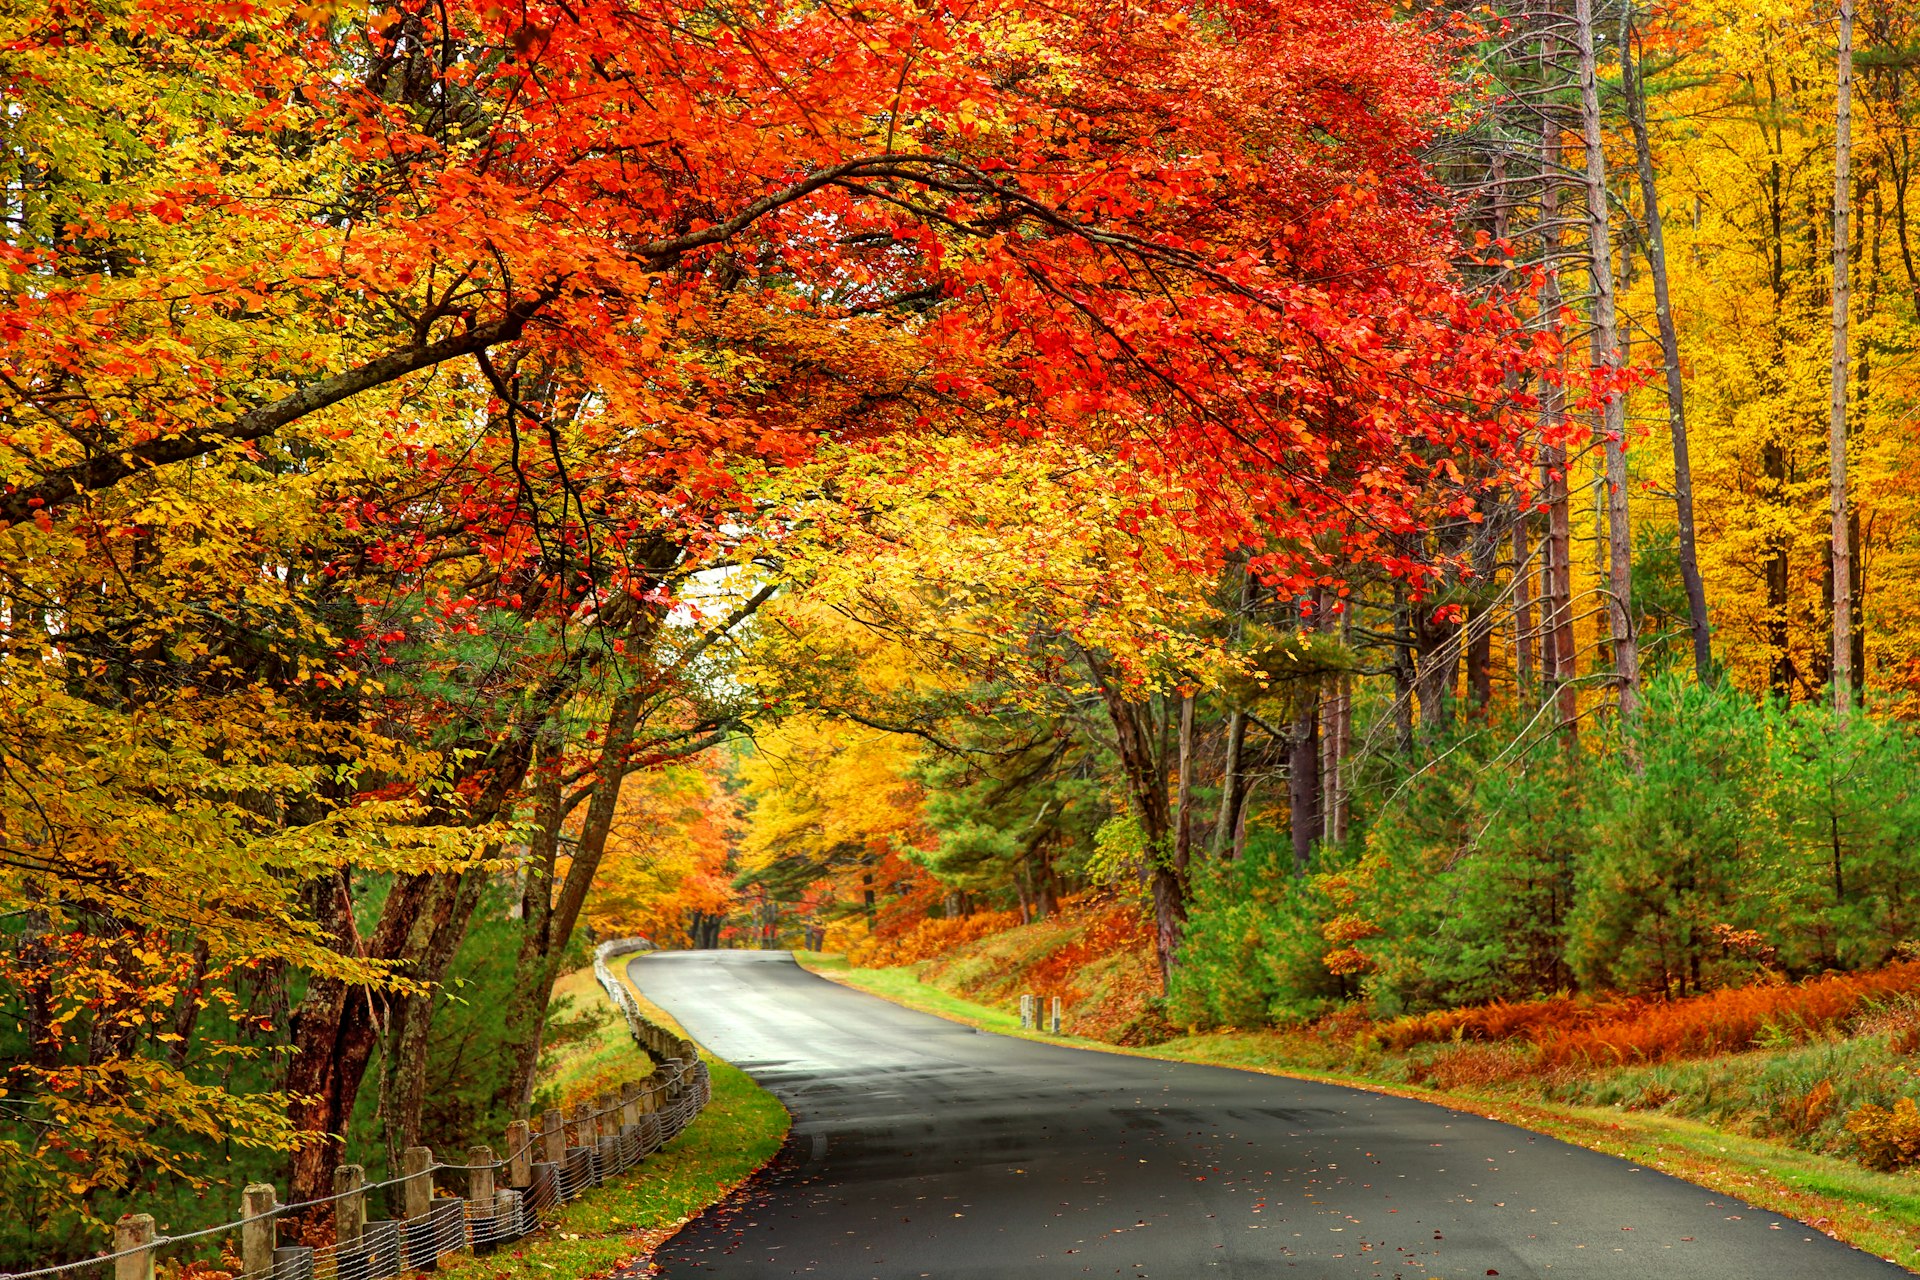 Scenic autumn road in Massachusetts, New England